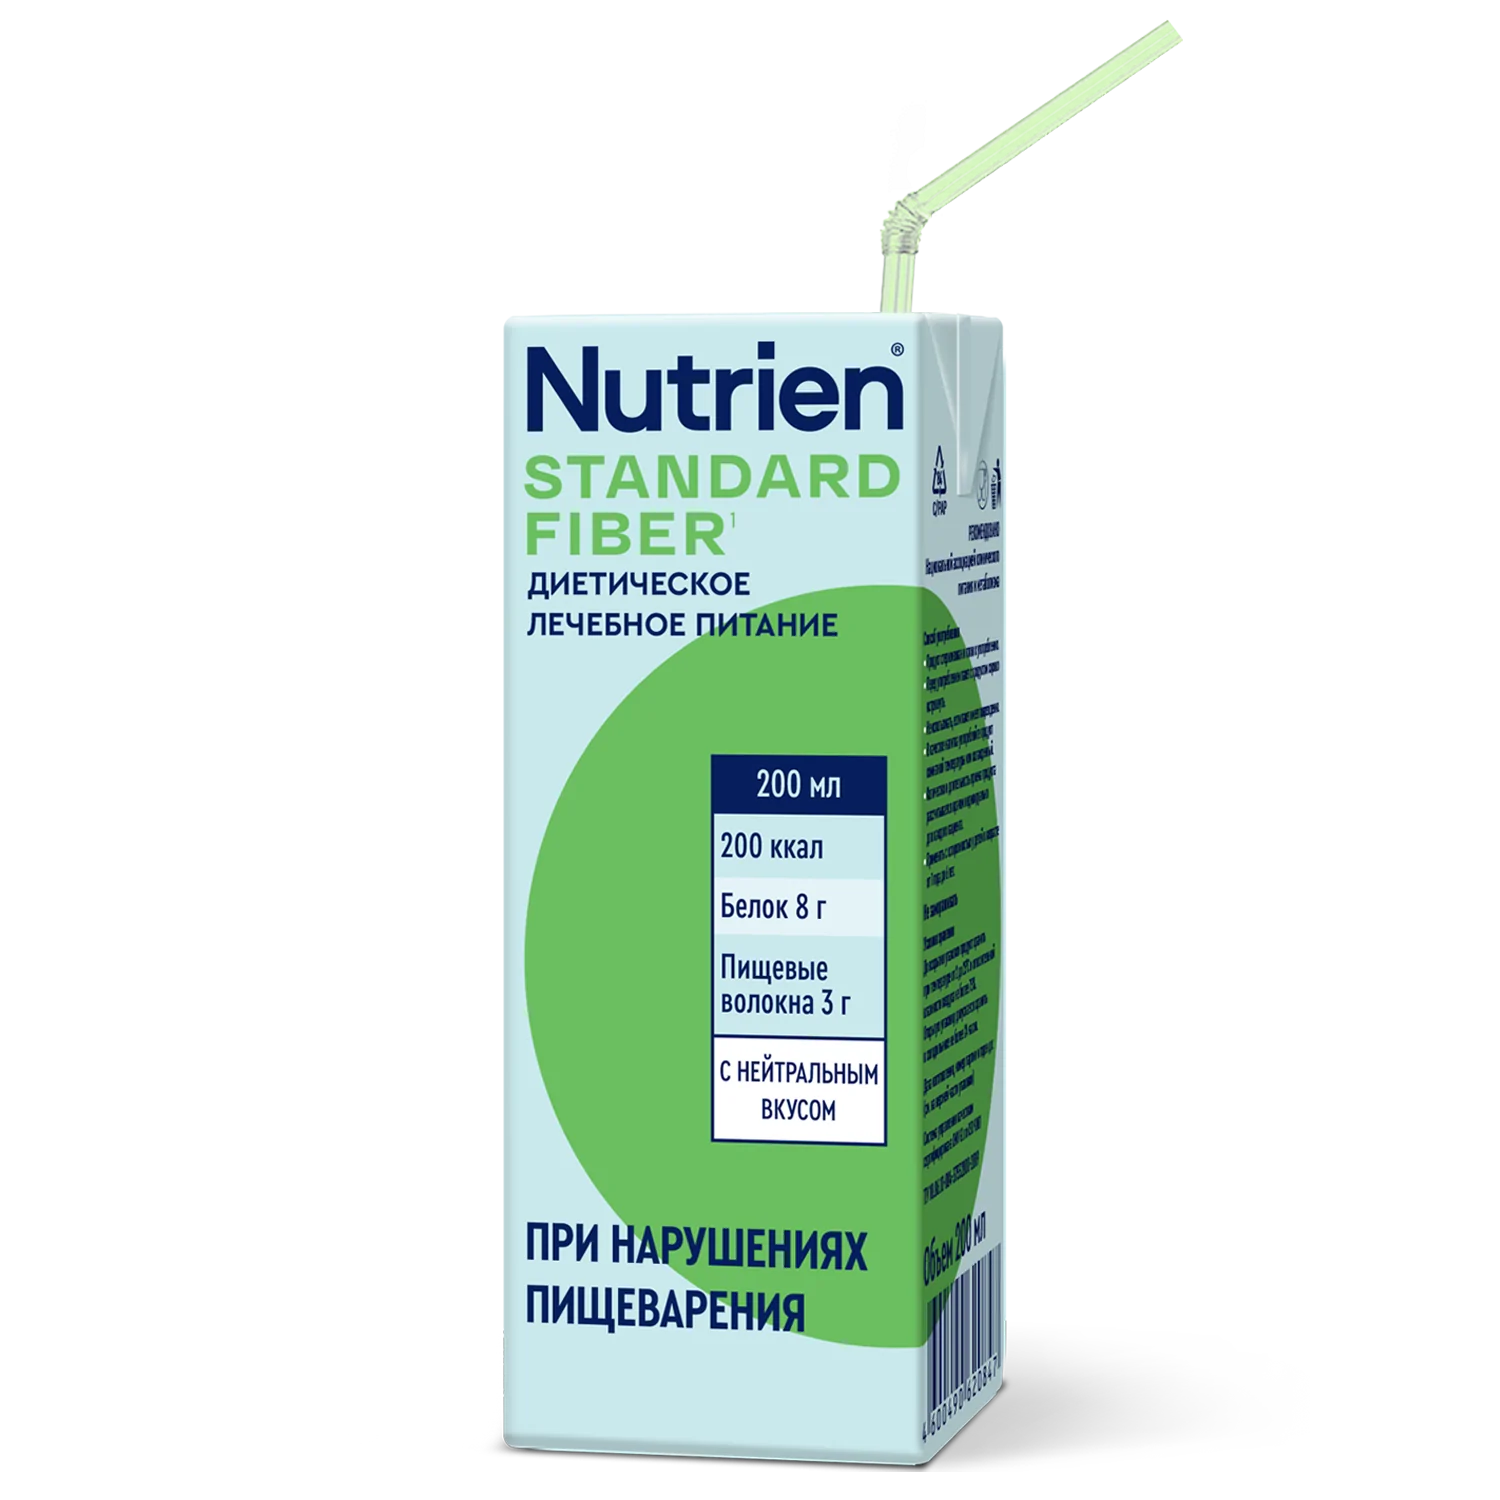 Nutrien Standard Fiber - 11